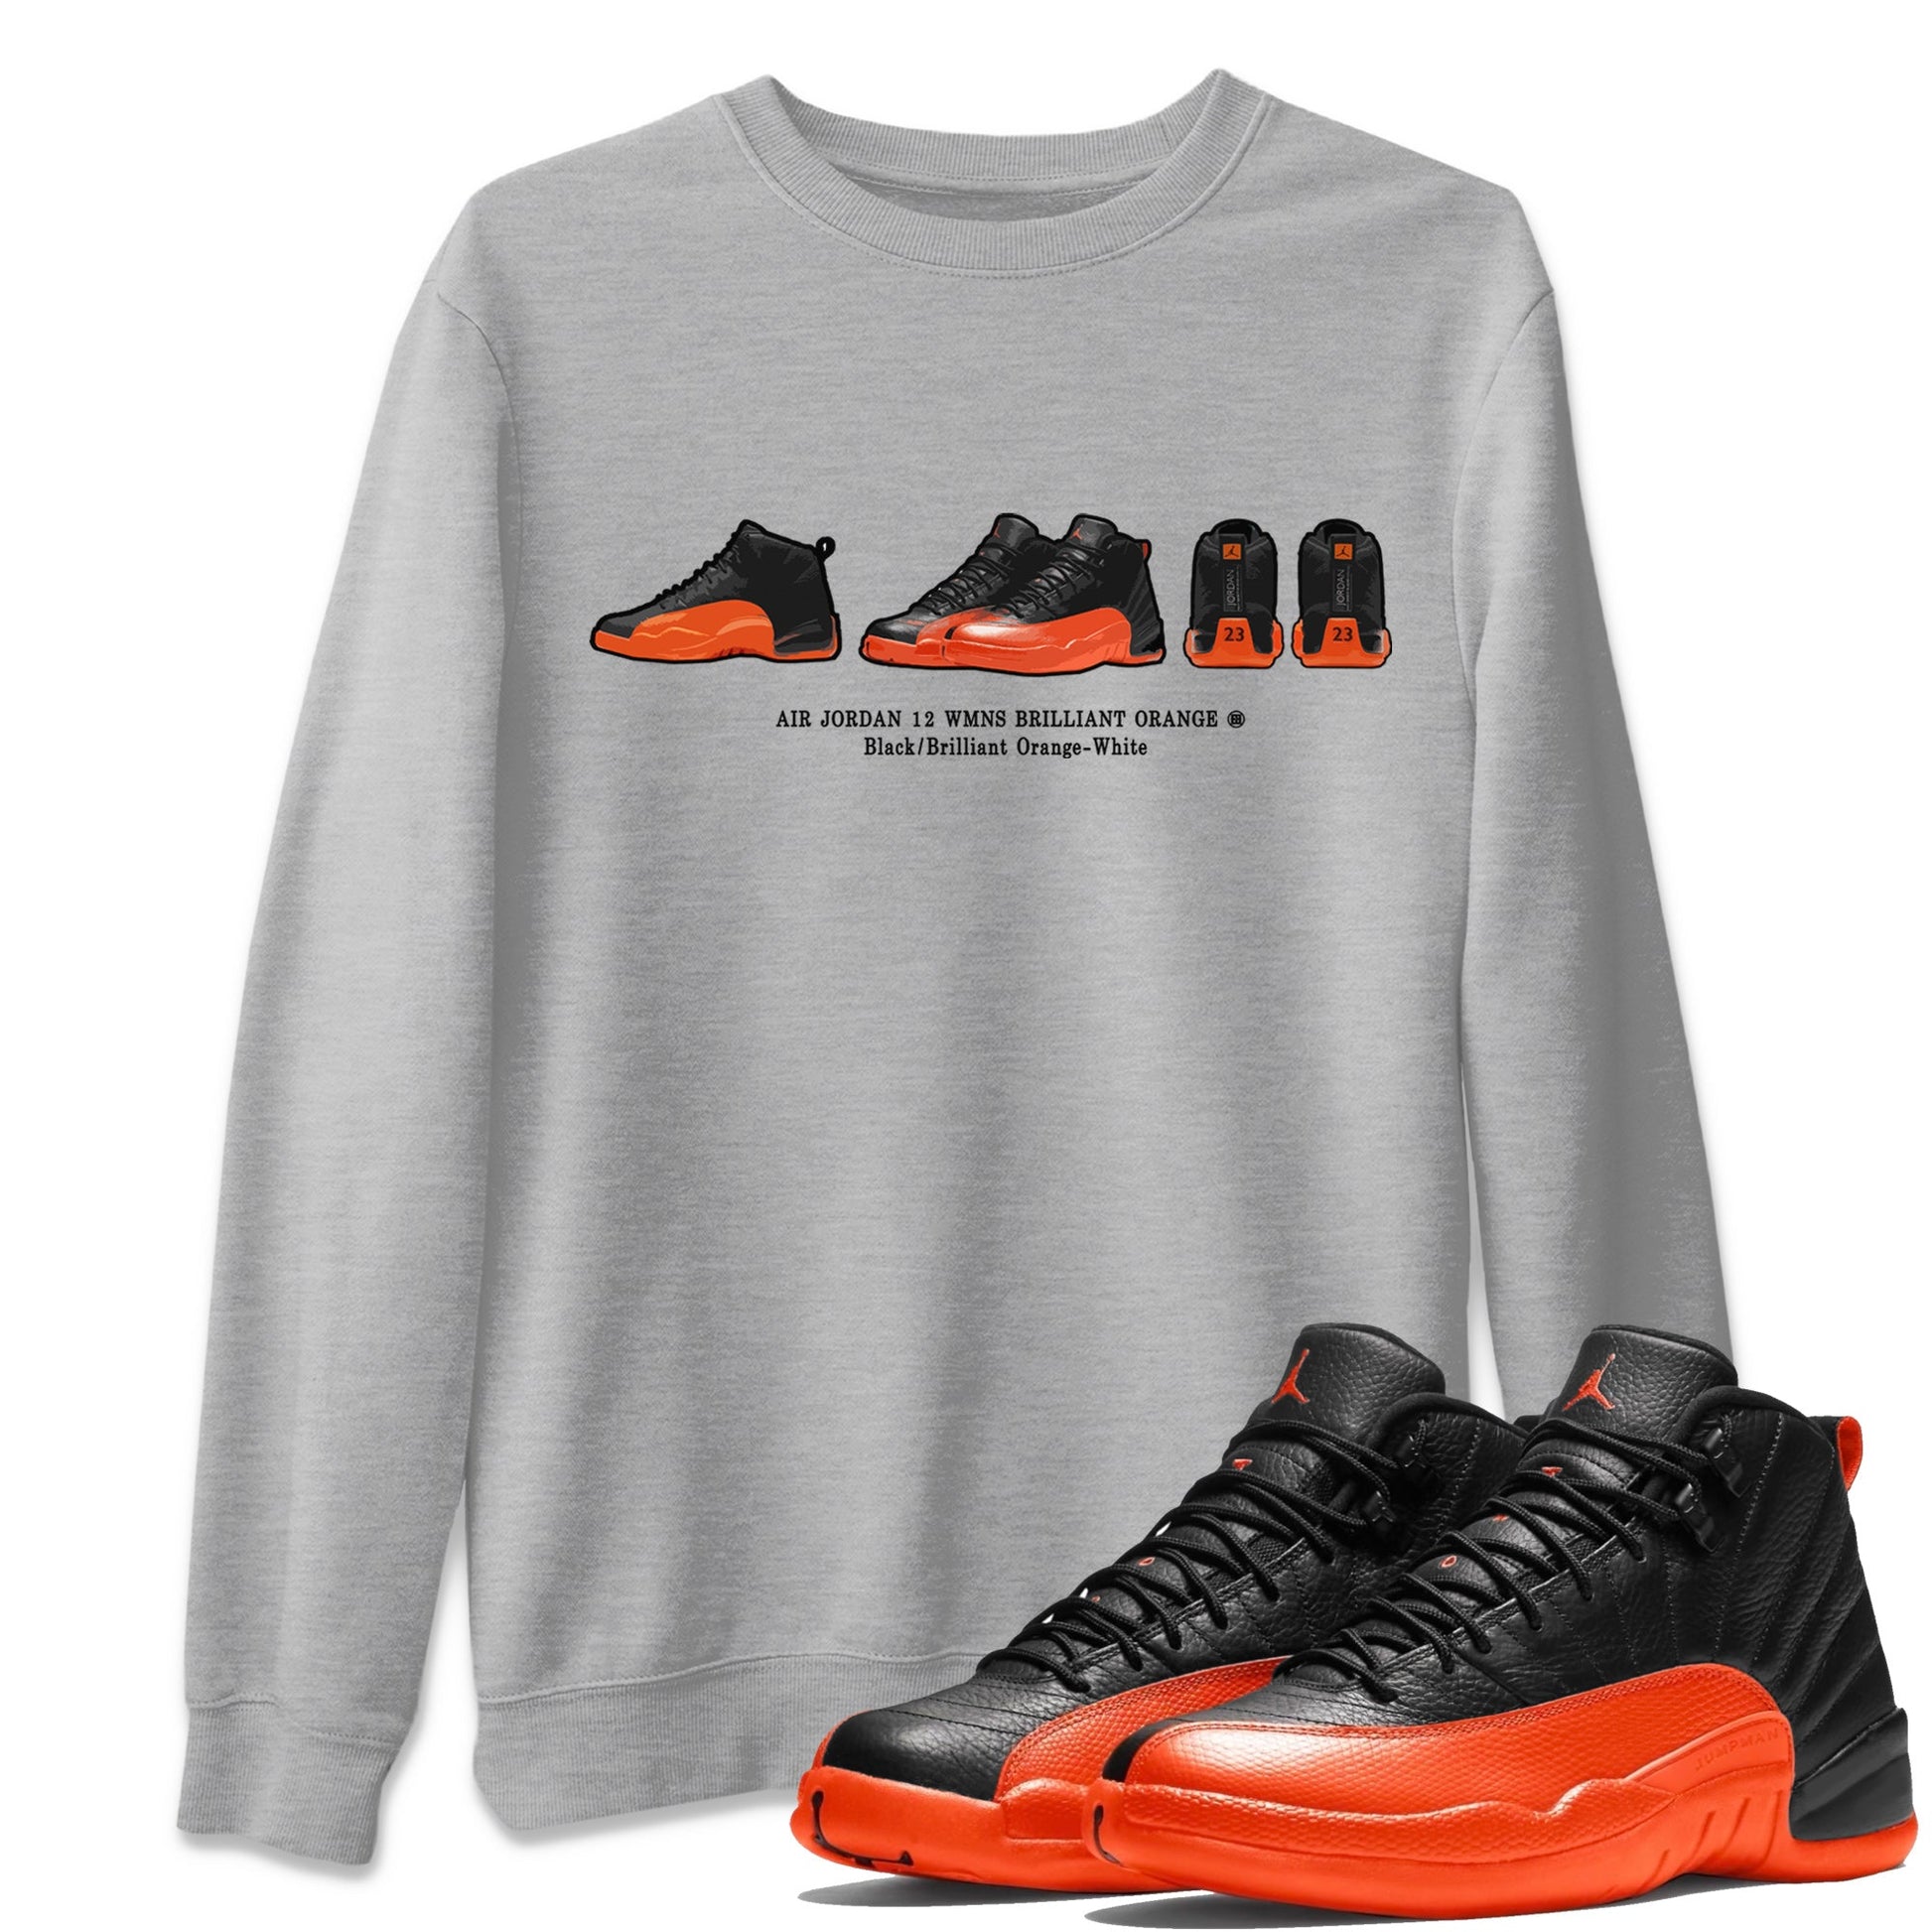 Air Jordan 12 Brilliant Orange Sneaker Match Tees Sneaker Prelude t shirt Air Jordan 12 WMNS Brilliant Orange Streetwear Sneaker Shirt Unisex Shirts Heather Grey 1